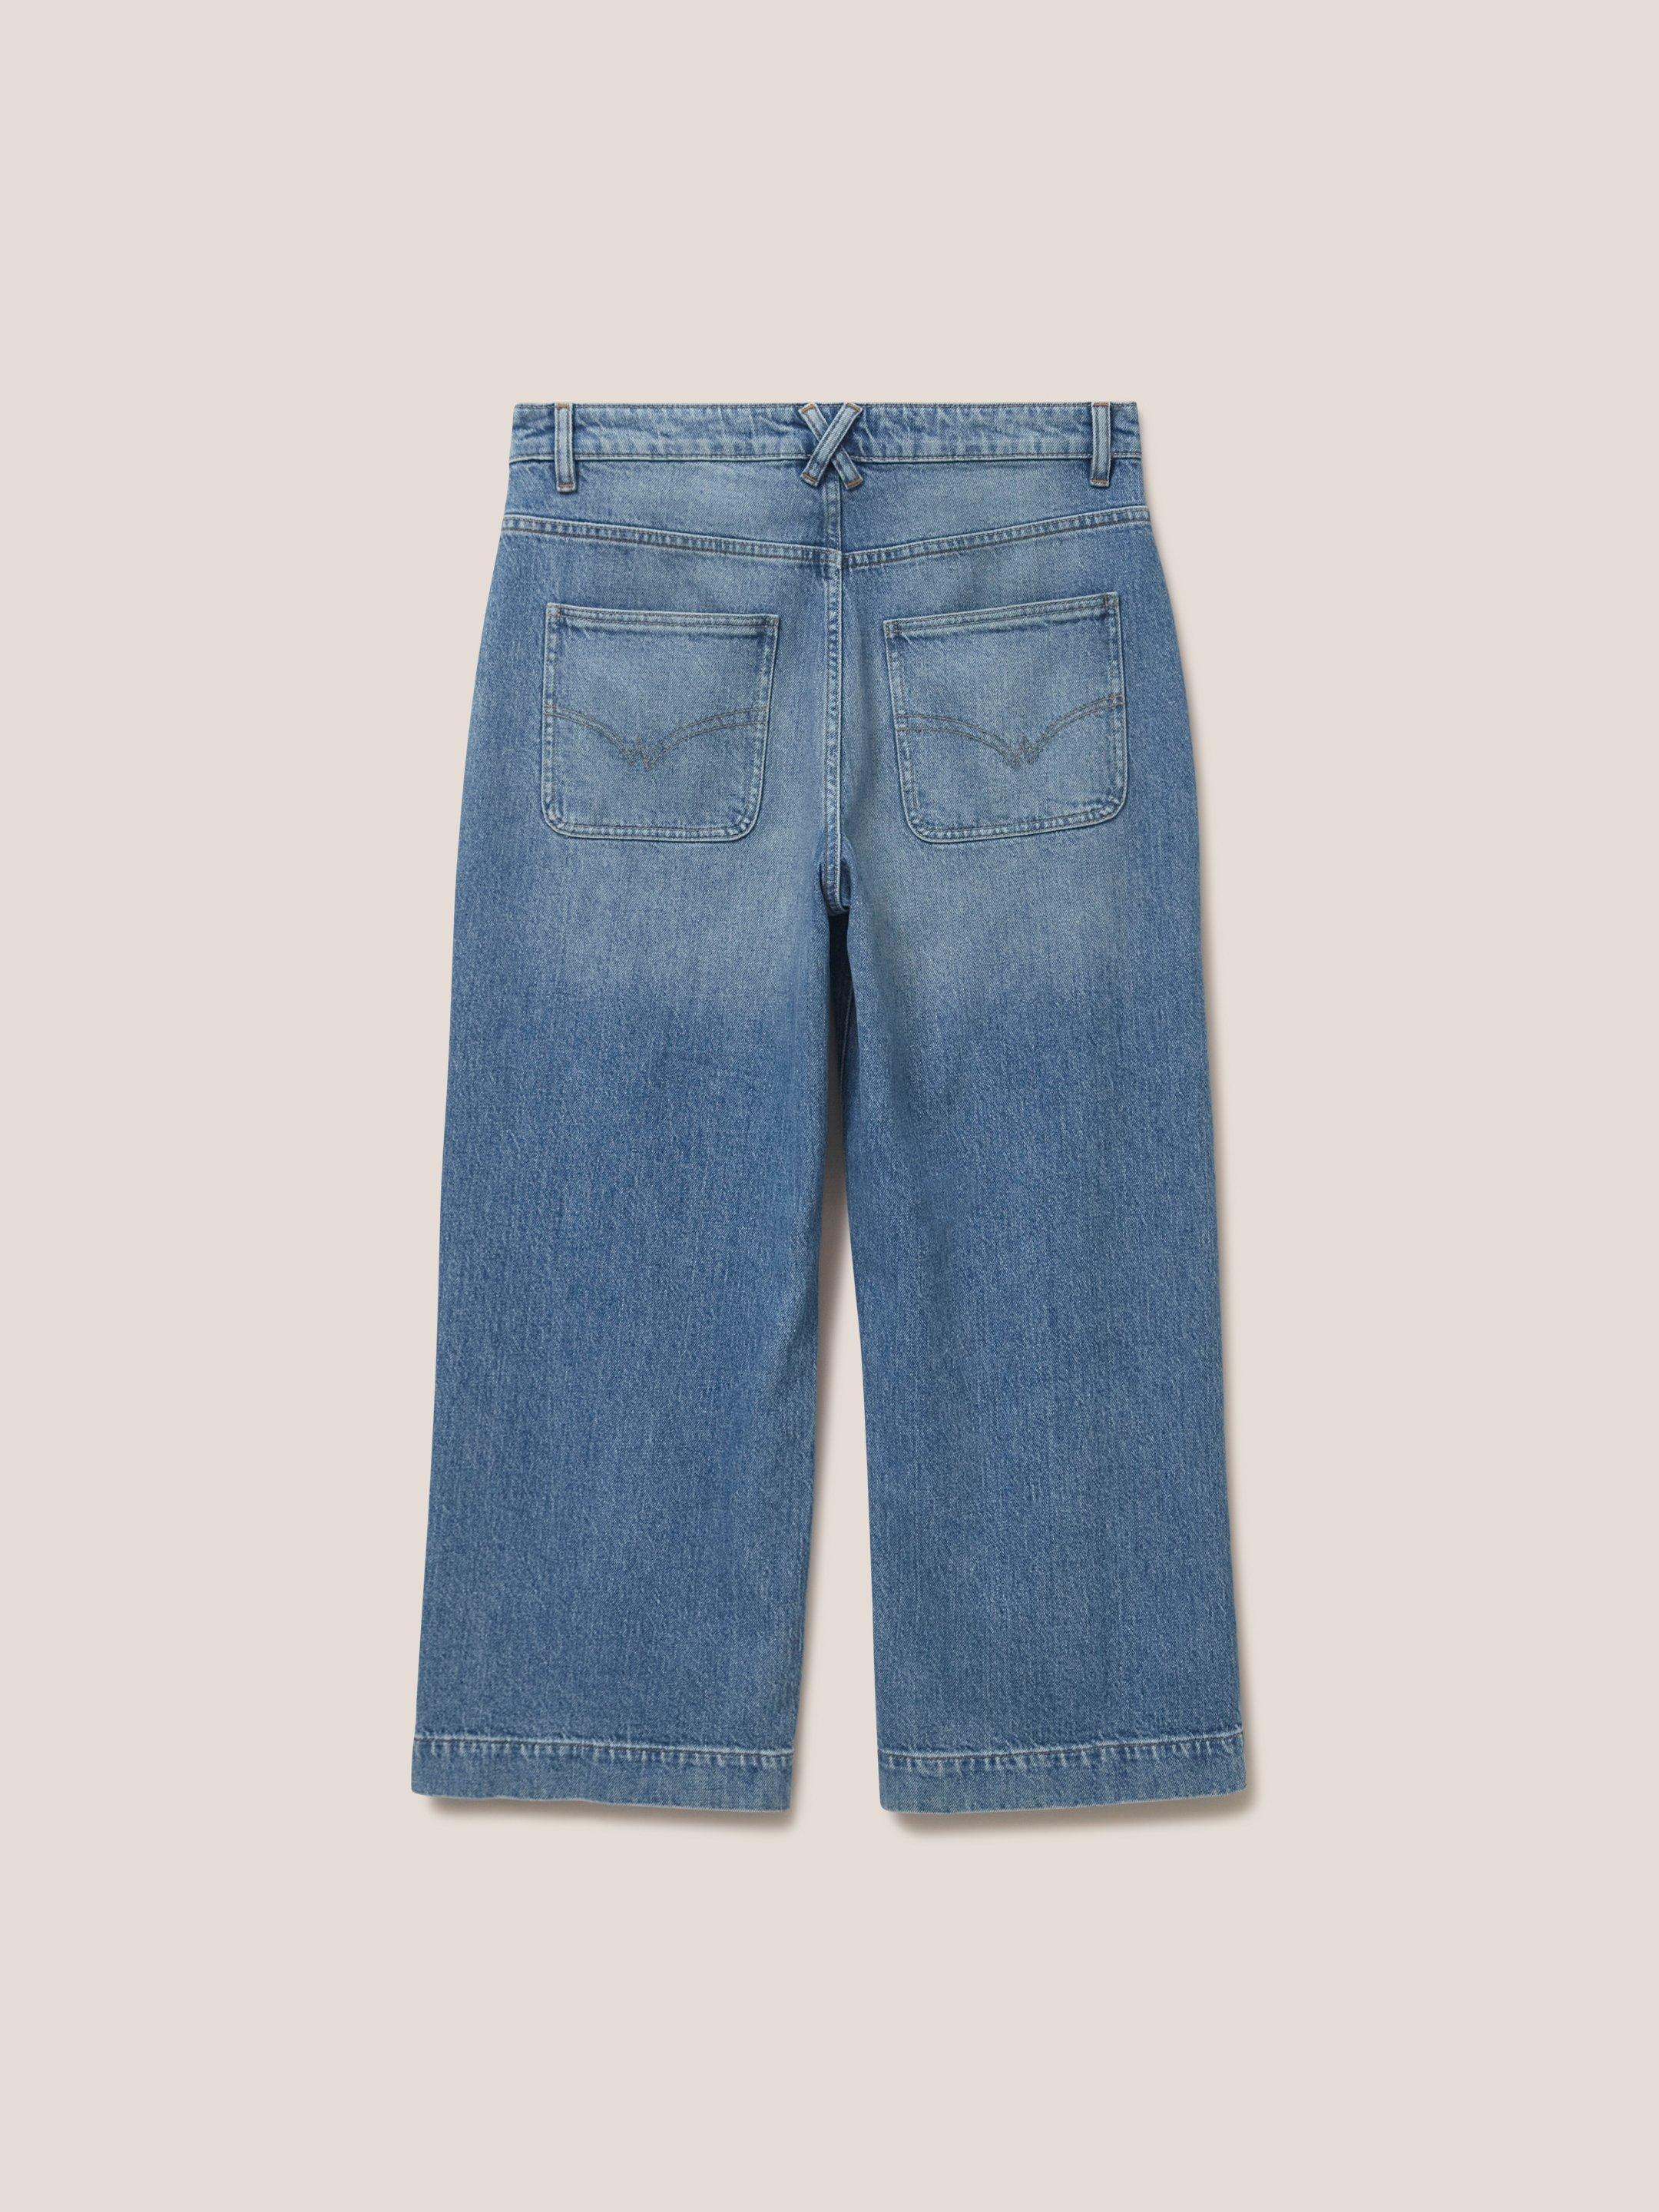 Tia Wide Leg Crop Jeans in LGT DENIM - FLAT BACK